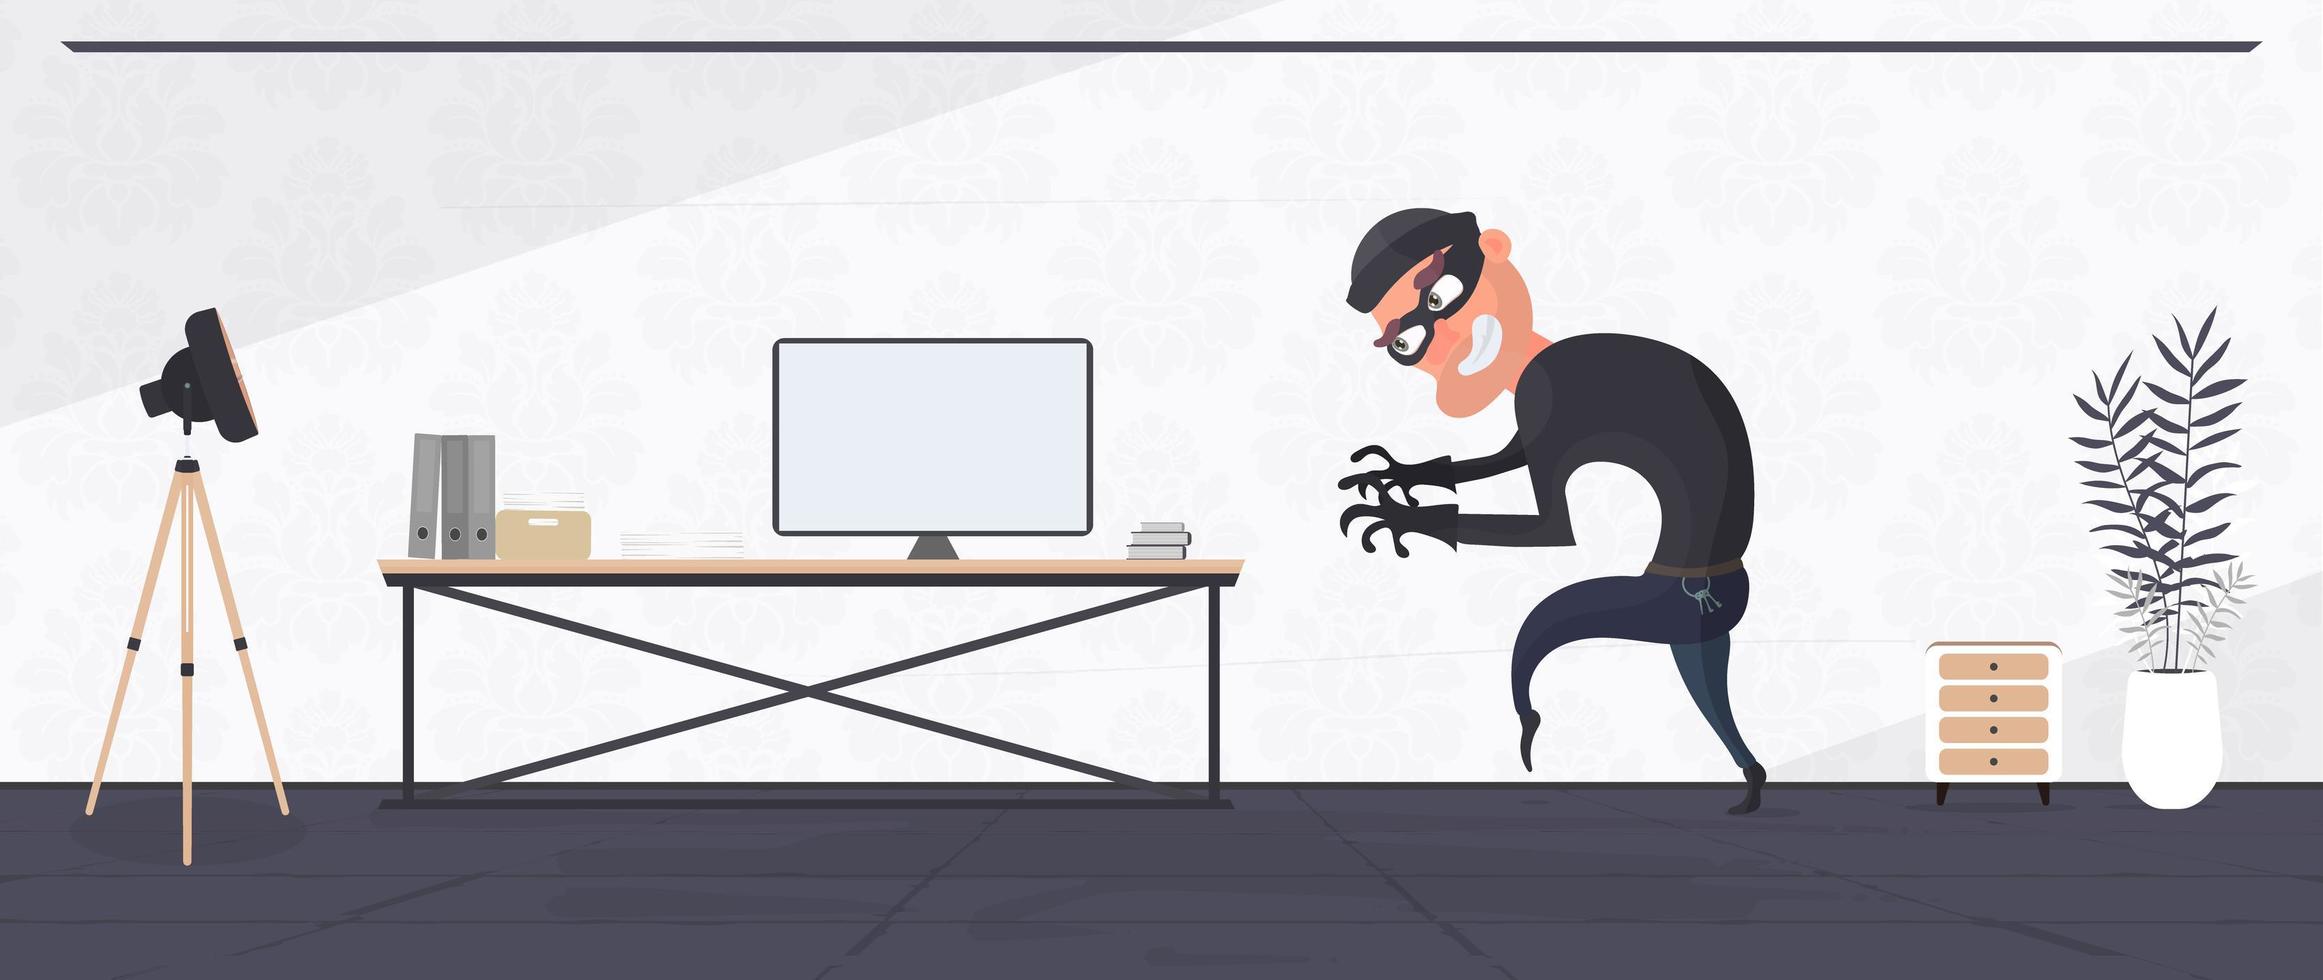 o ladrão entrou no apartamento e roubou o laptop. um ladrão de escritório rouba dados. conceito de segurança e roubo. vetor. vetor